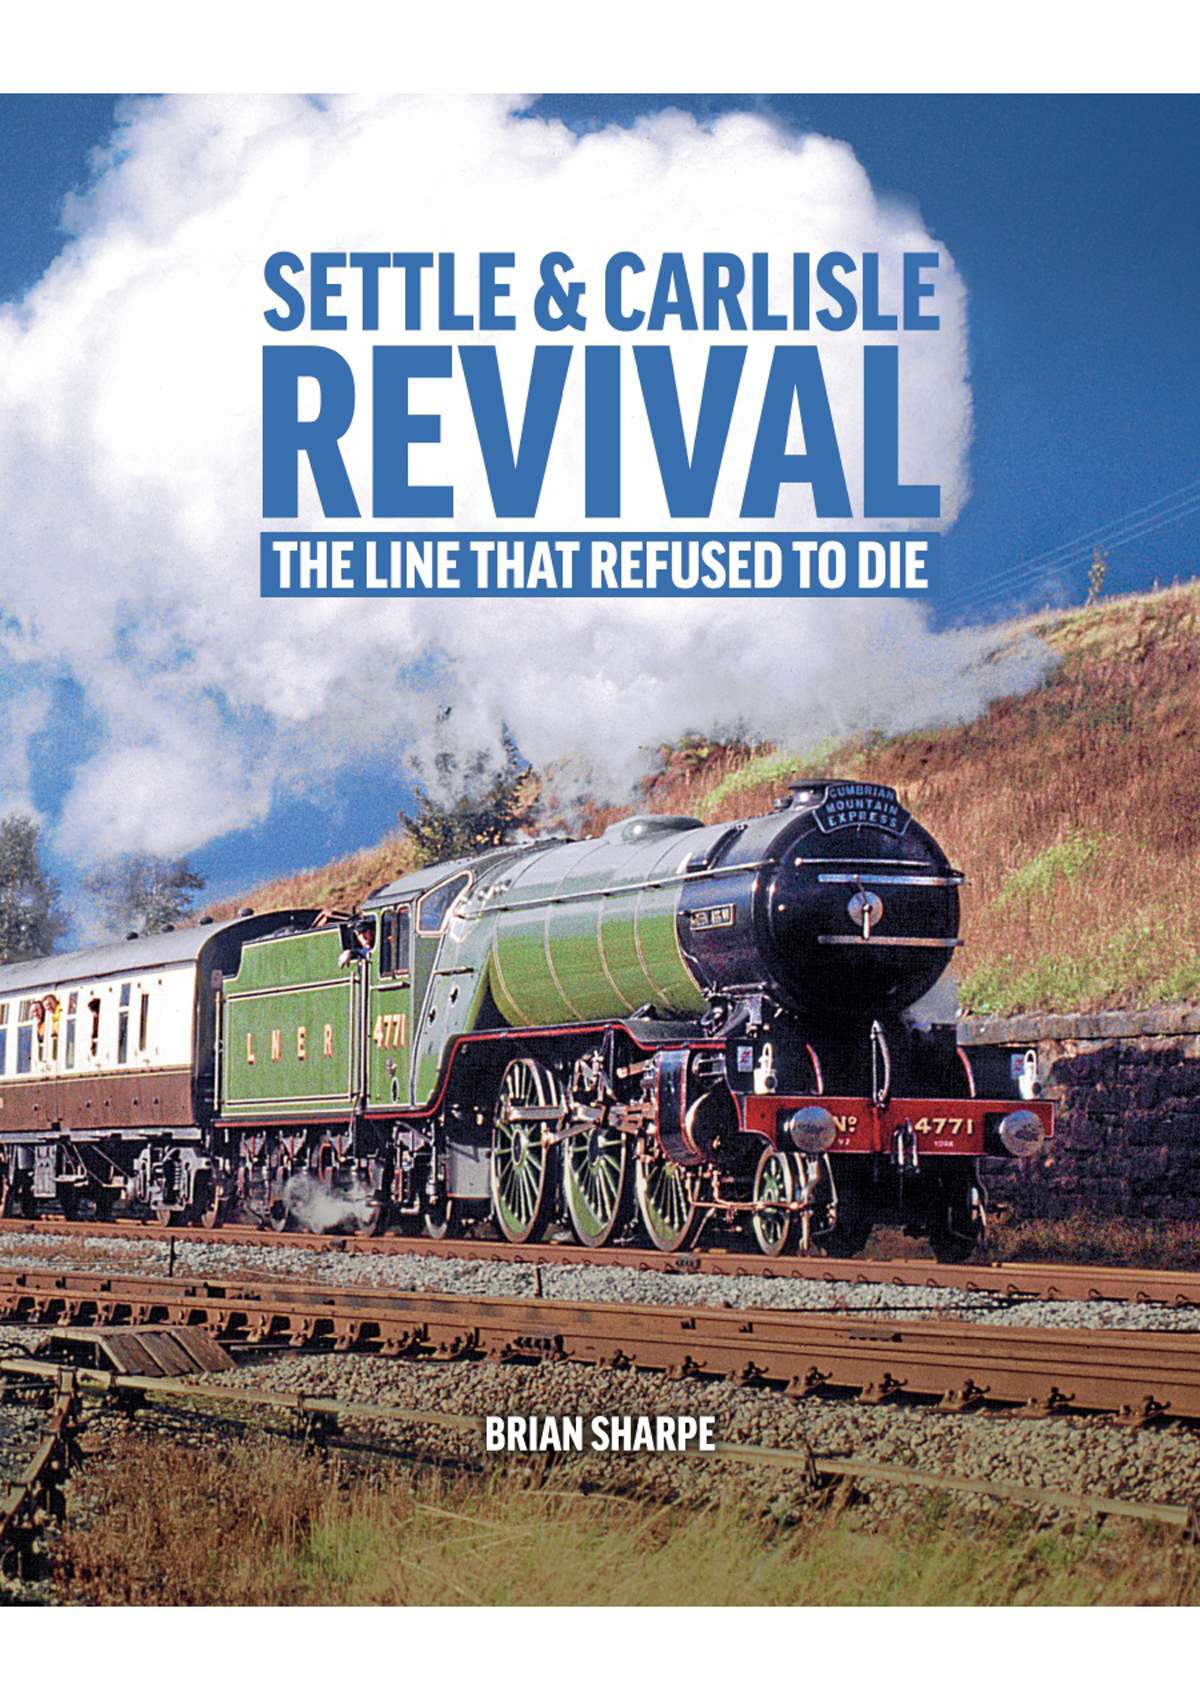 Settle & Carlisle Revival